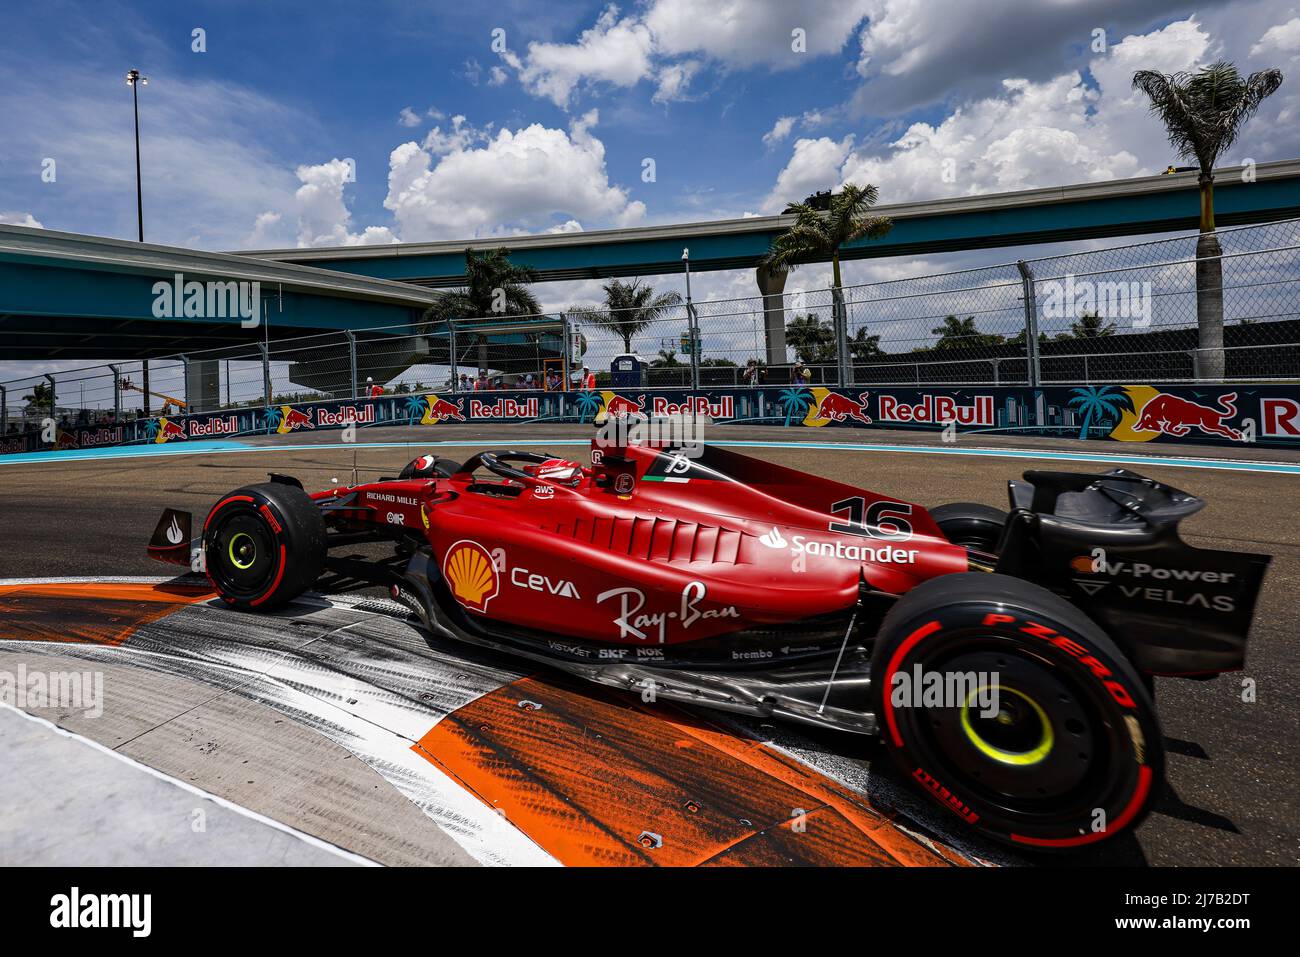 Formula 1 Crypto.com Miami Grand Prix